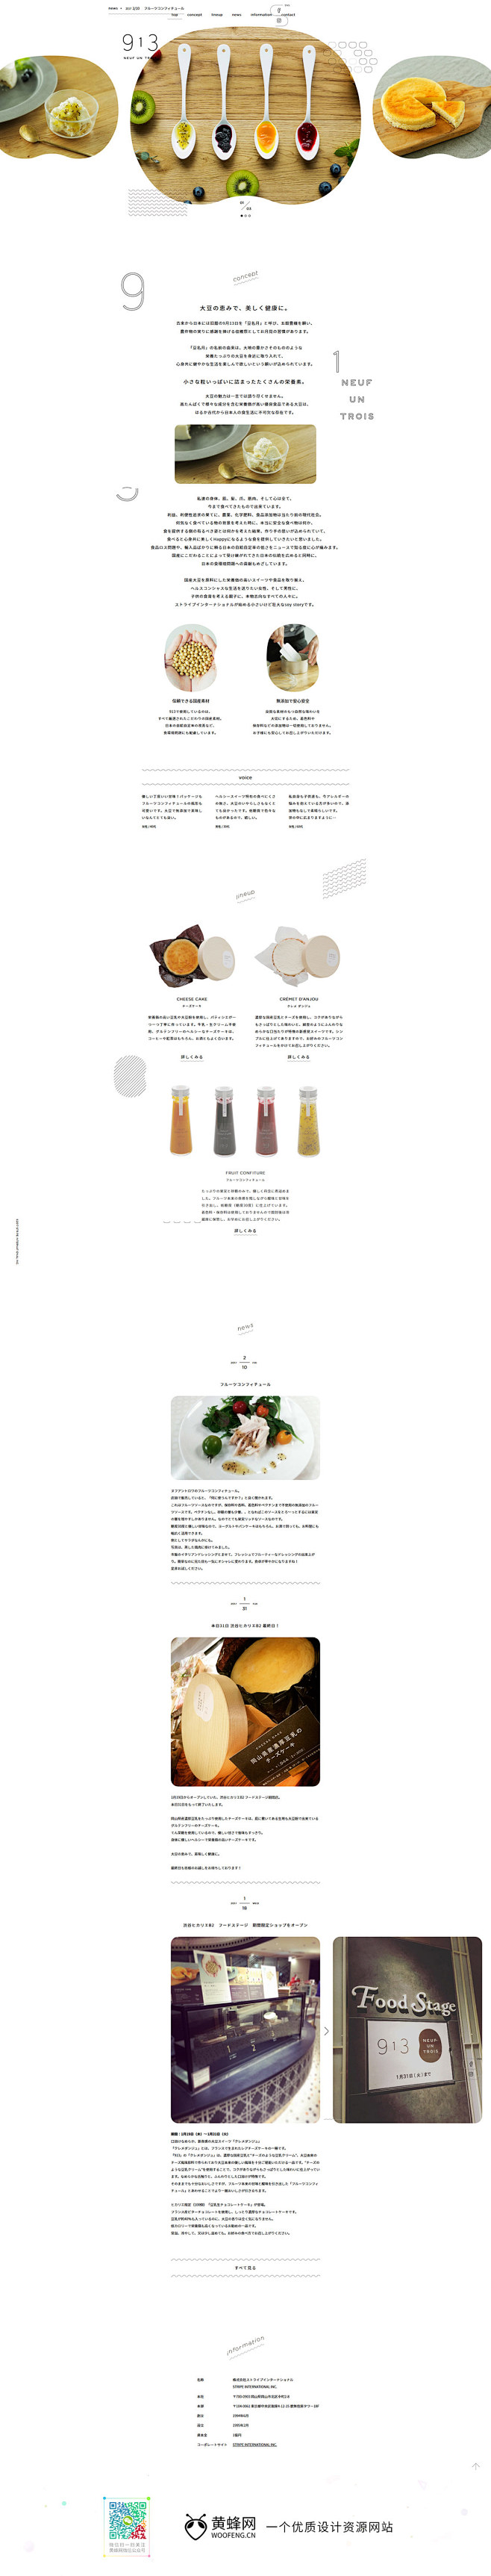 913日本美食饮食网站 来源自黄蜂网ht...